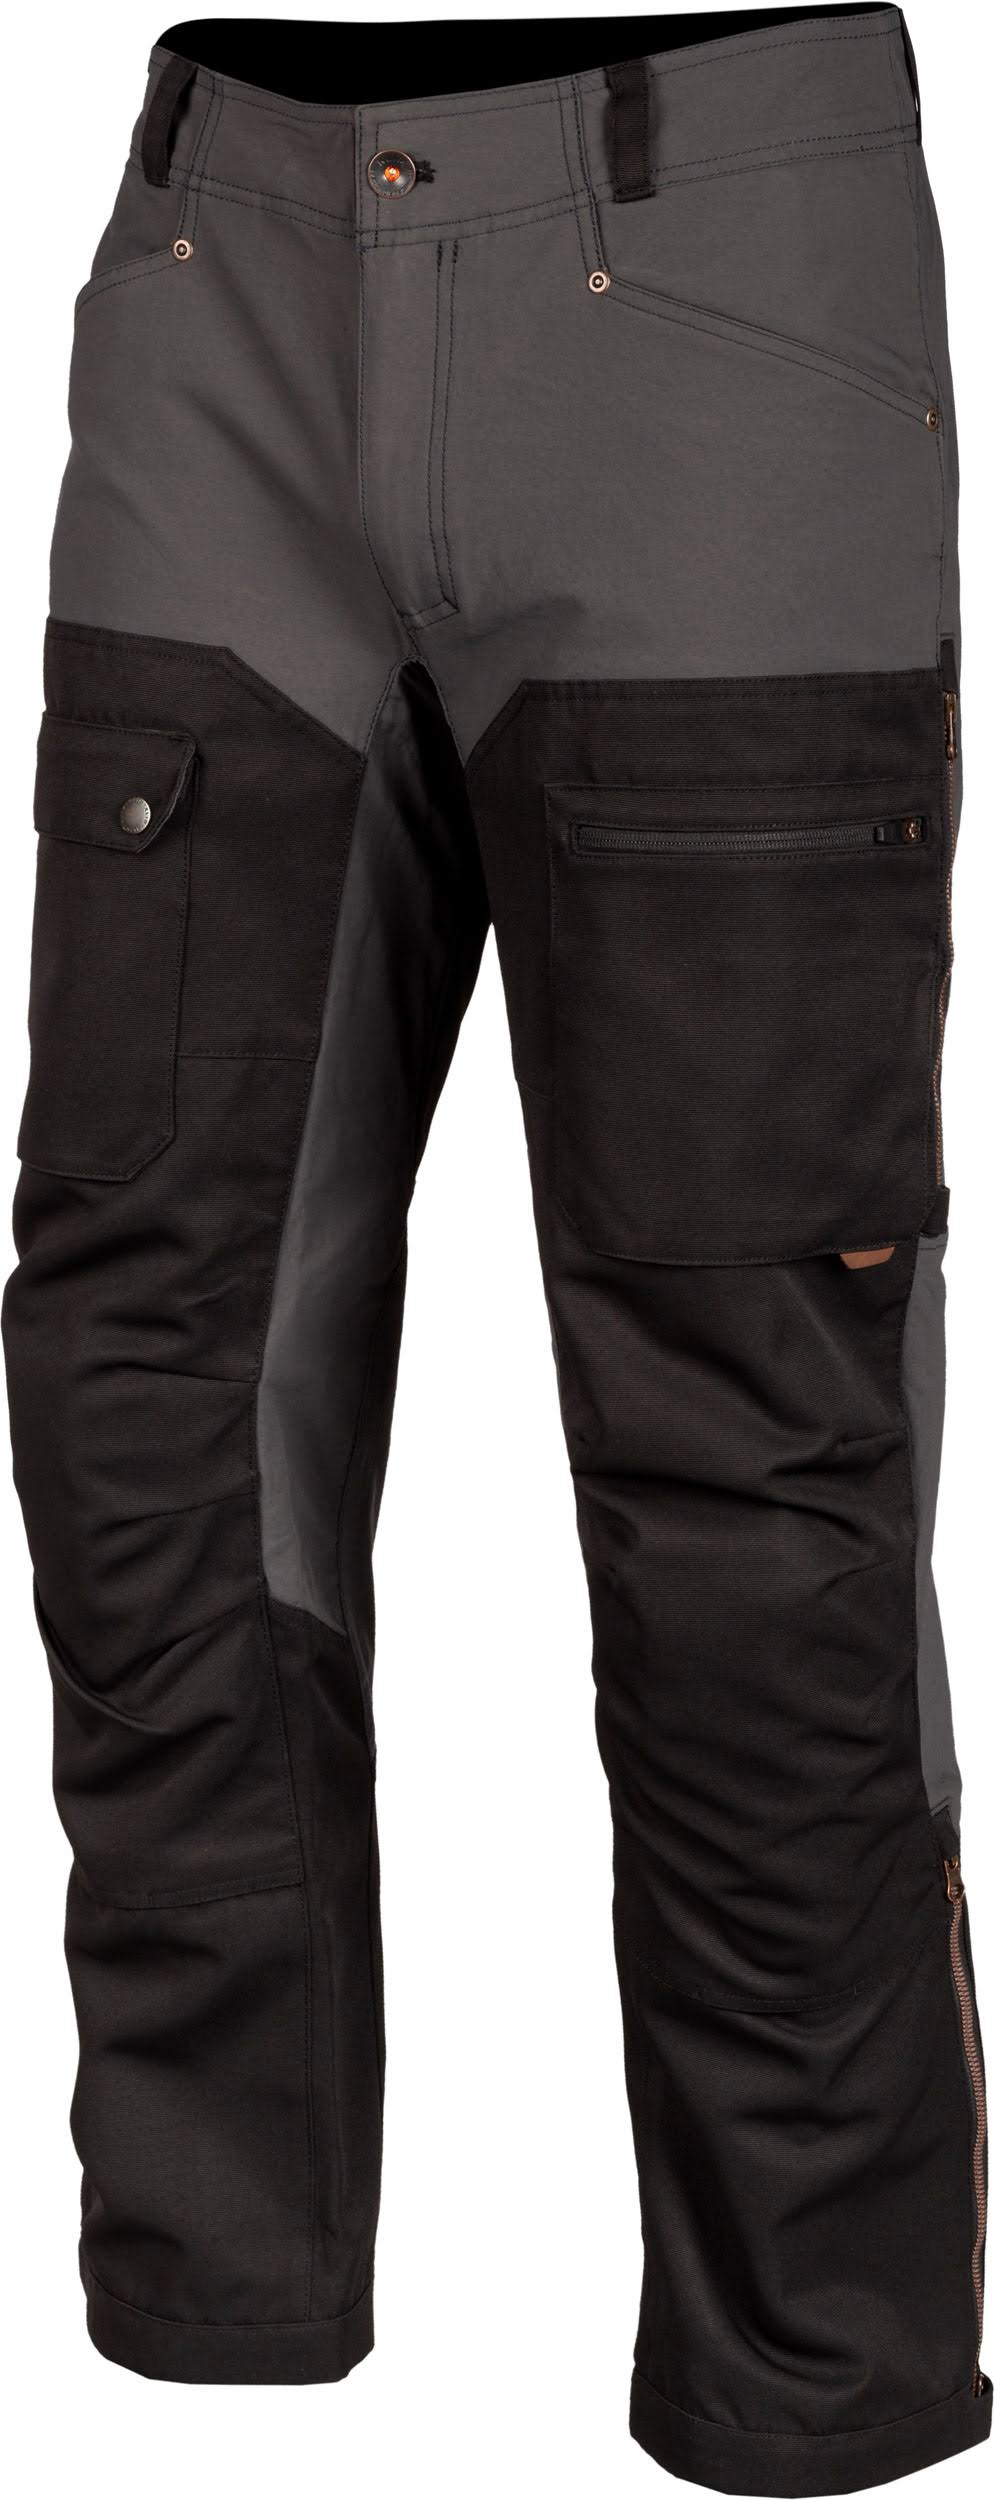 Klim Switchback Cargo Pants - Grey - 34 - My Leather Swear